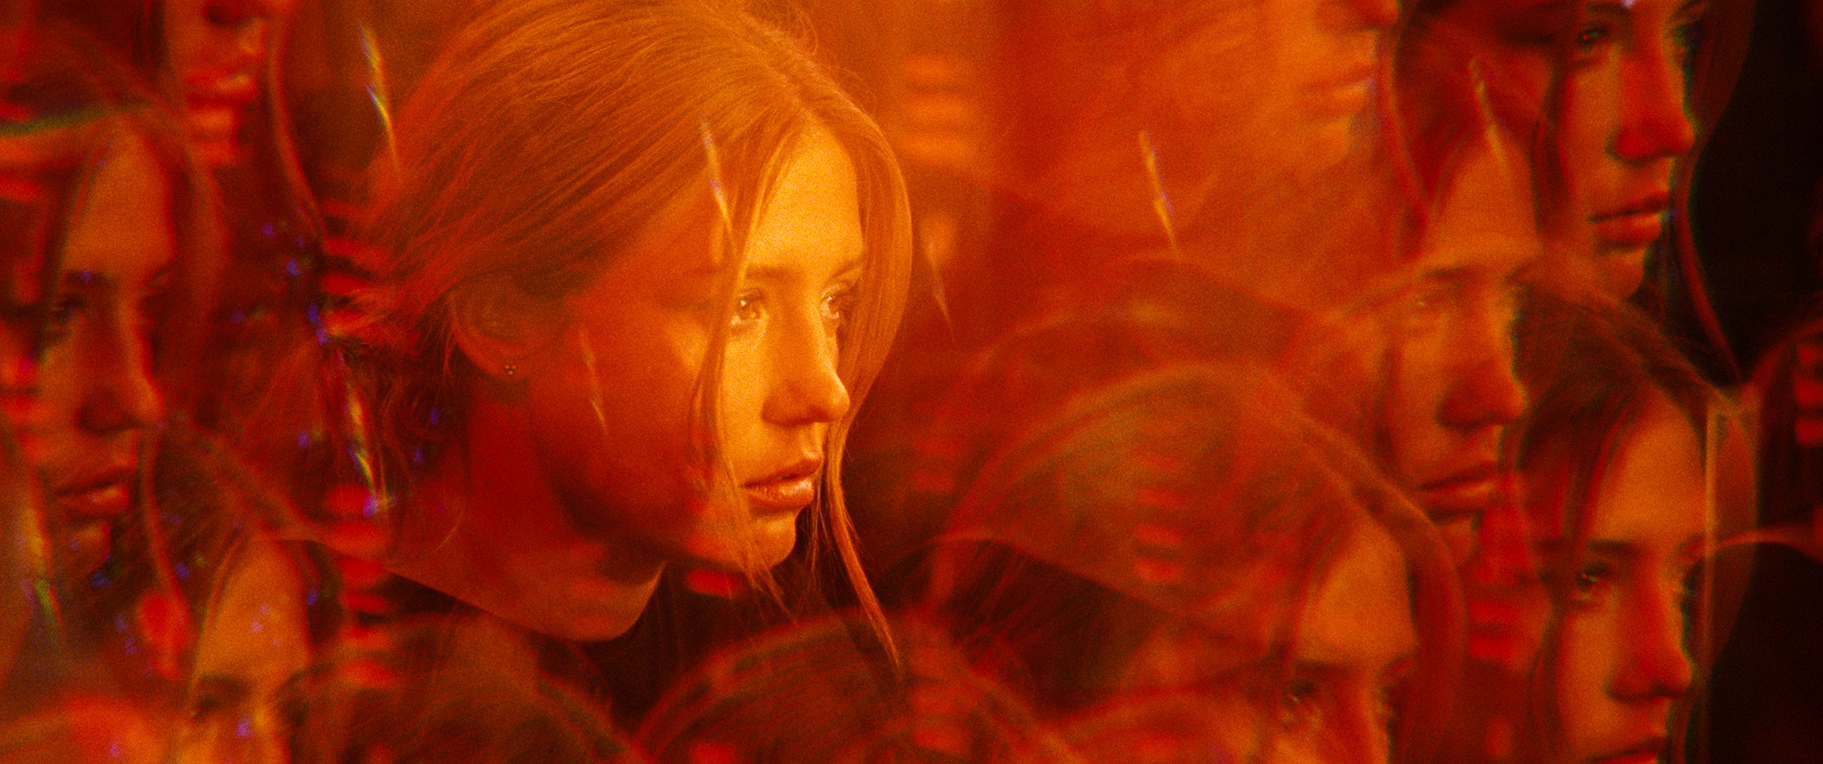 Záběr z filmu Pět ďáblů. Červeně osvětlená tvář ženy je obklopená spoustou rozmazaných kopií jejího obličeje.